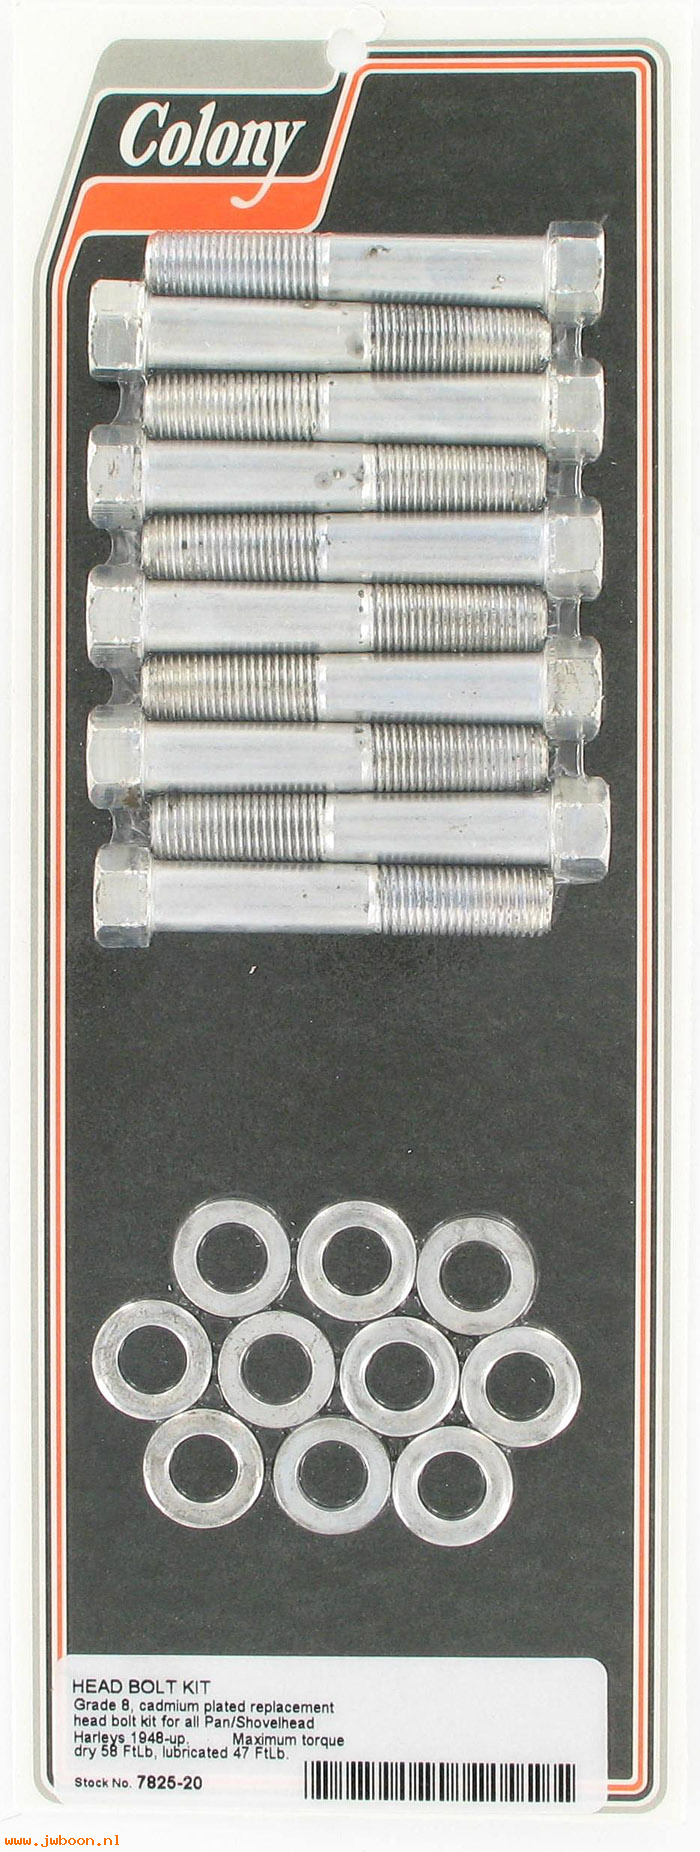 C 7825-20 (16814-48 / 14-48): Head bolt kit, hex heads, 1038CP - Big Twins, EL, FL, FX 48-84